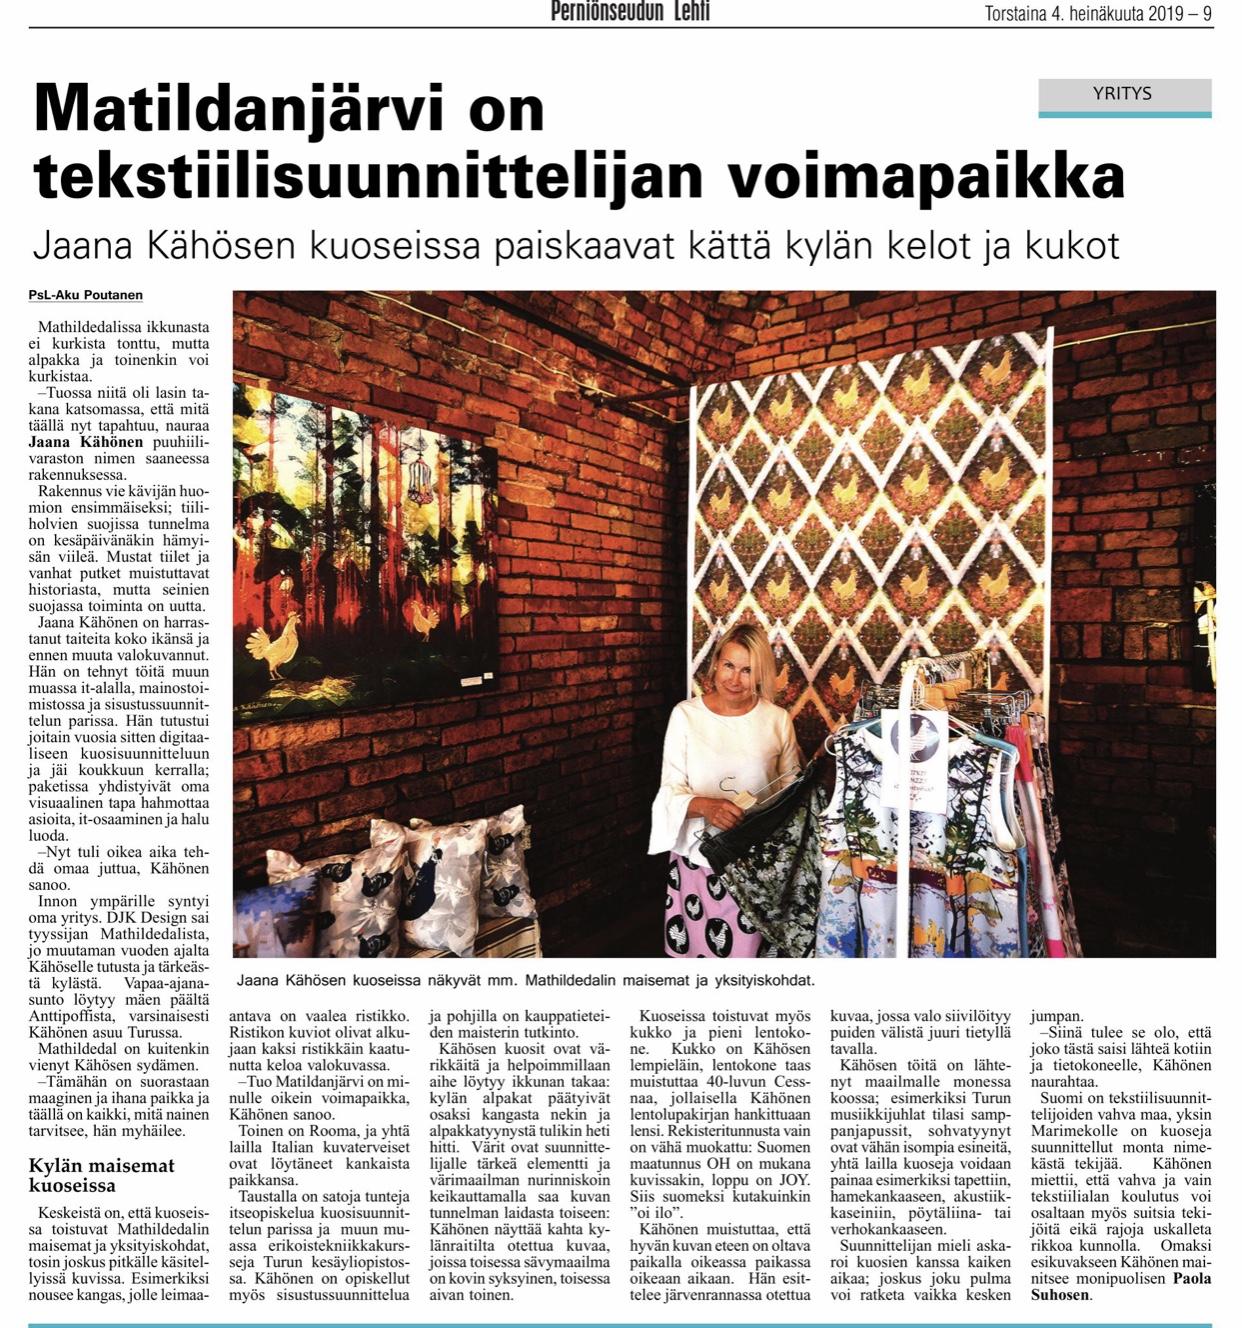 DJK juttu Perniönseudun Lehdessä 4.7.19 kertoo Jaana Kähösen kuoseista sekä PopUpista Mathildedalissa 